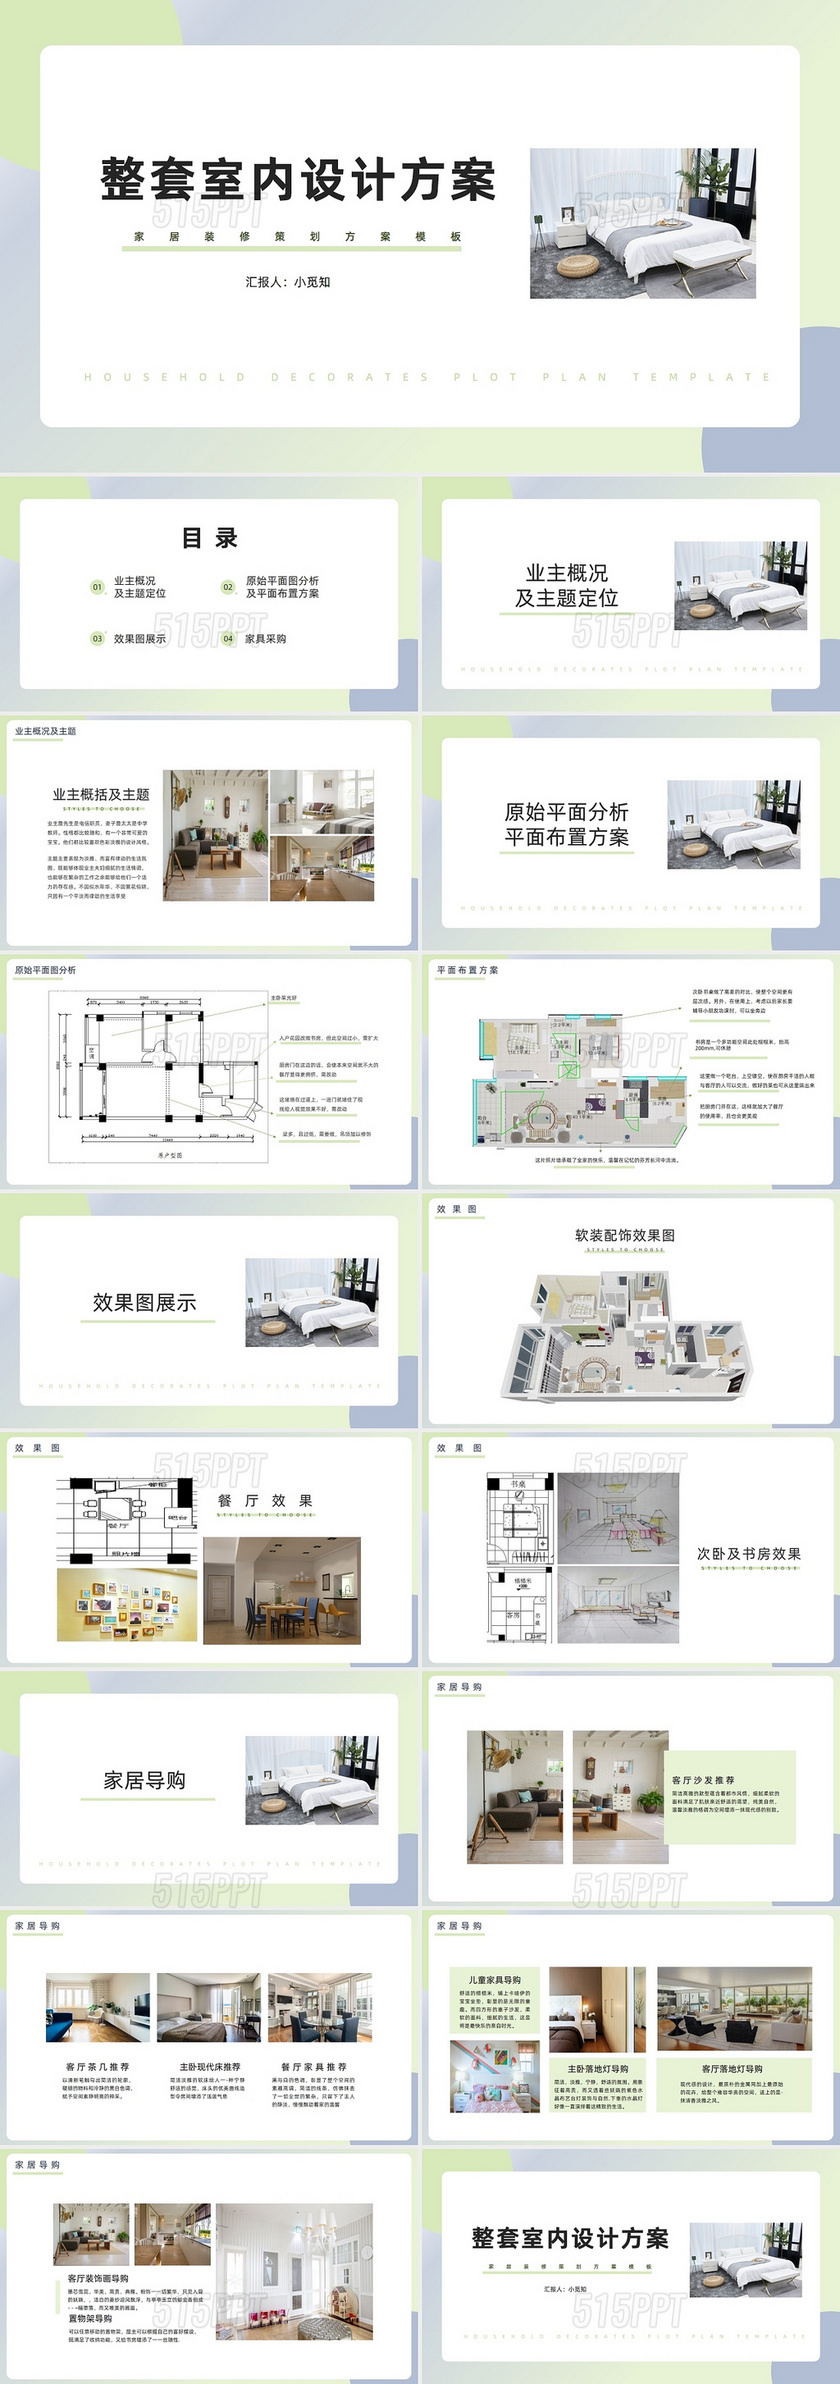 绿色清新简约整套室内设计方案PPT商务通用PPT